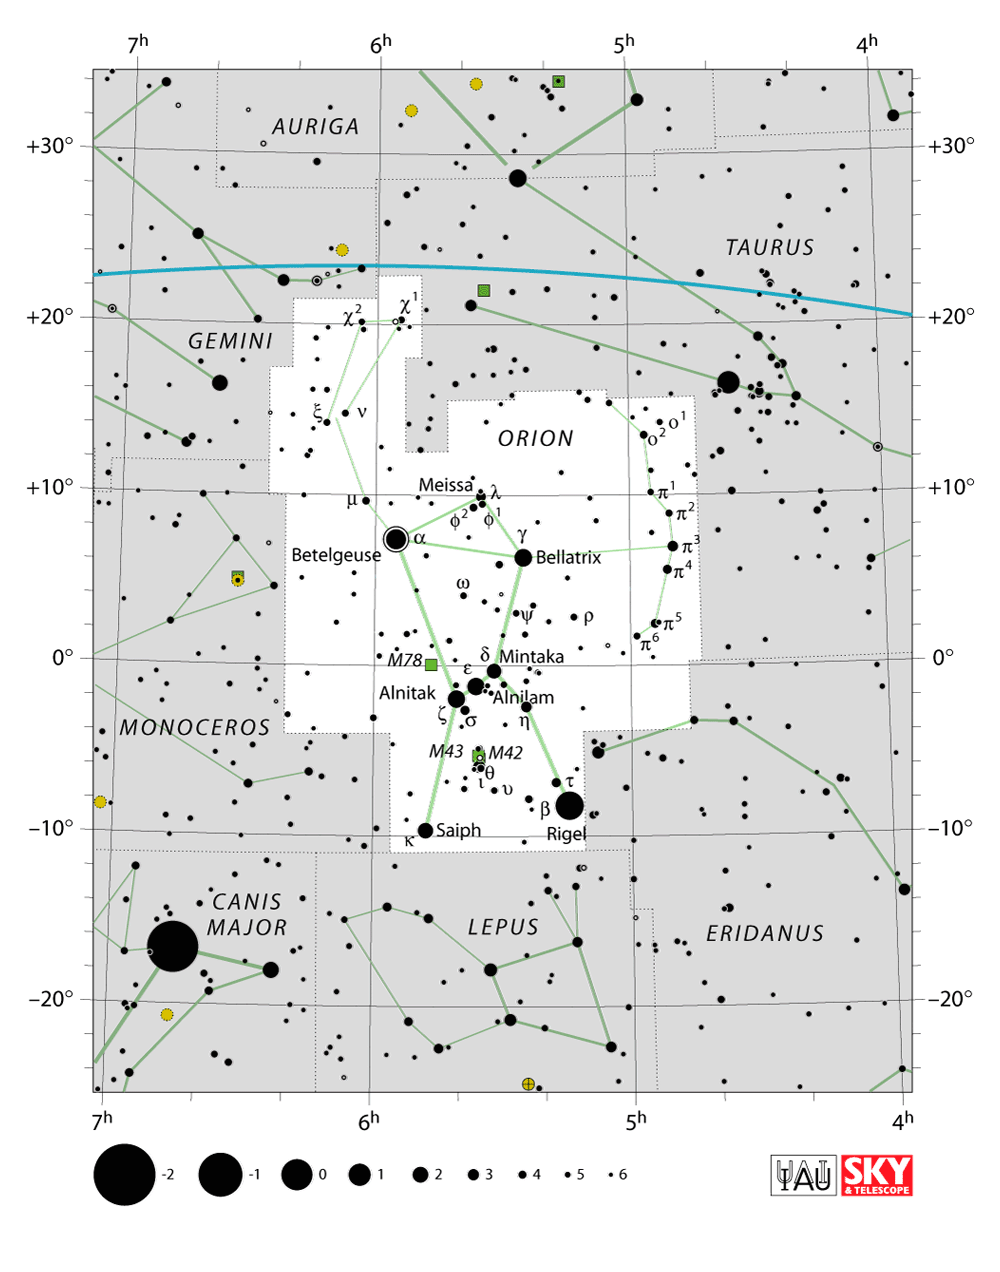 La costellazione di Orione. La stella in basso a sinistra, rappresentata come il disco nero più grosso nell’immagine, è la brillante stella Sirio, nella costellazione del Cane Maggiore. Credit: IAU/Sky&Telescope (https://www.iau.org/public/themes/constellations/) 